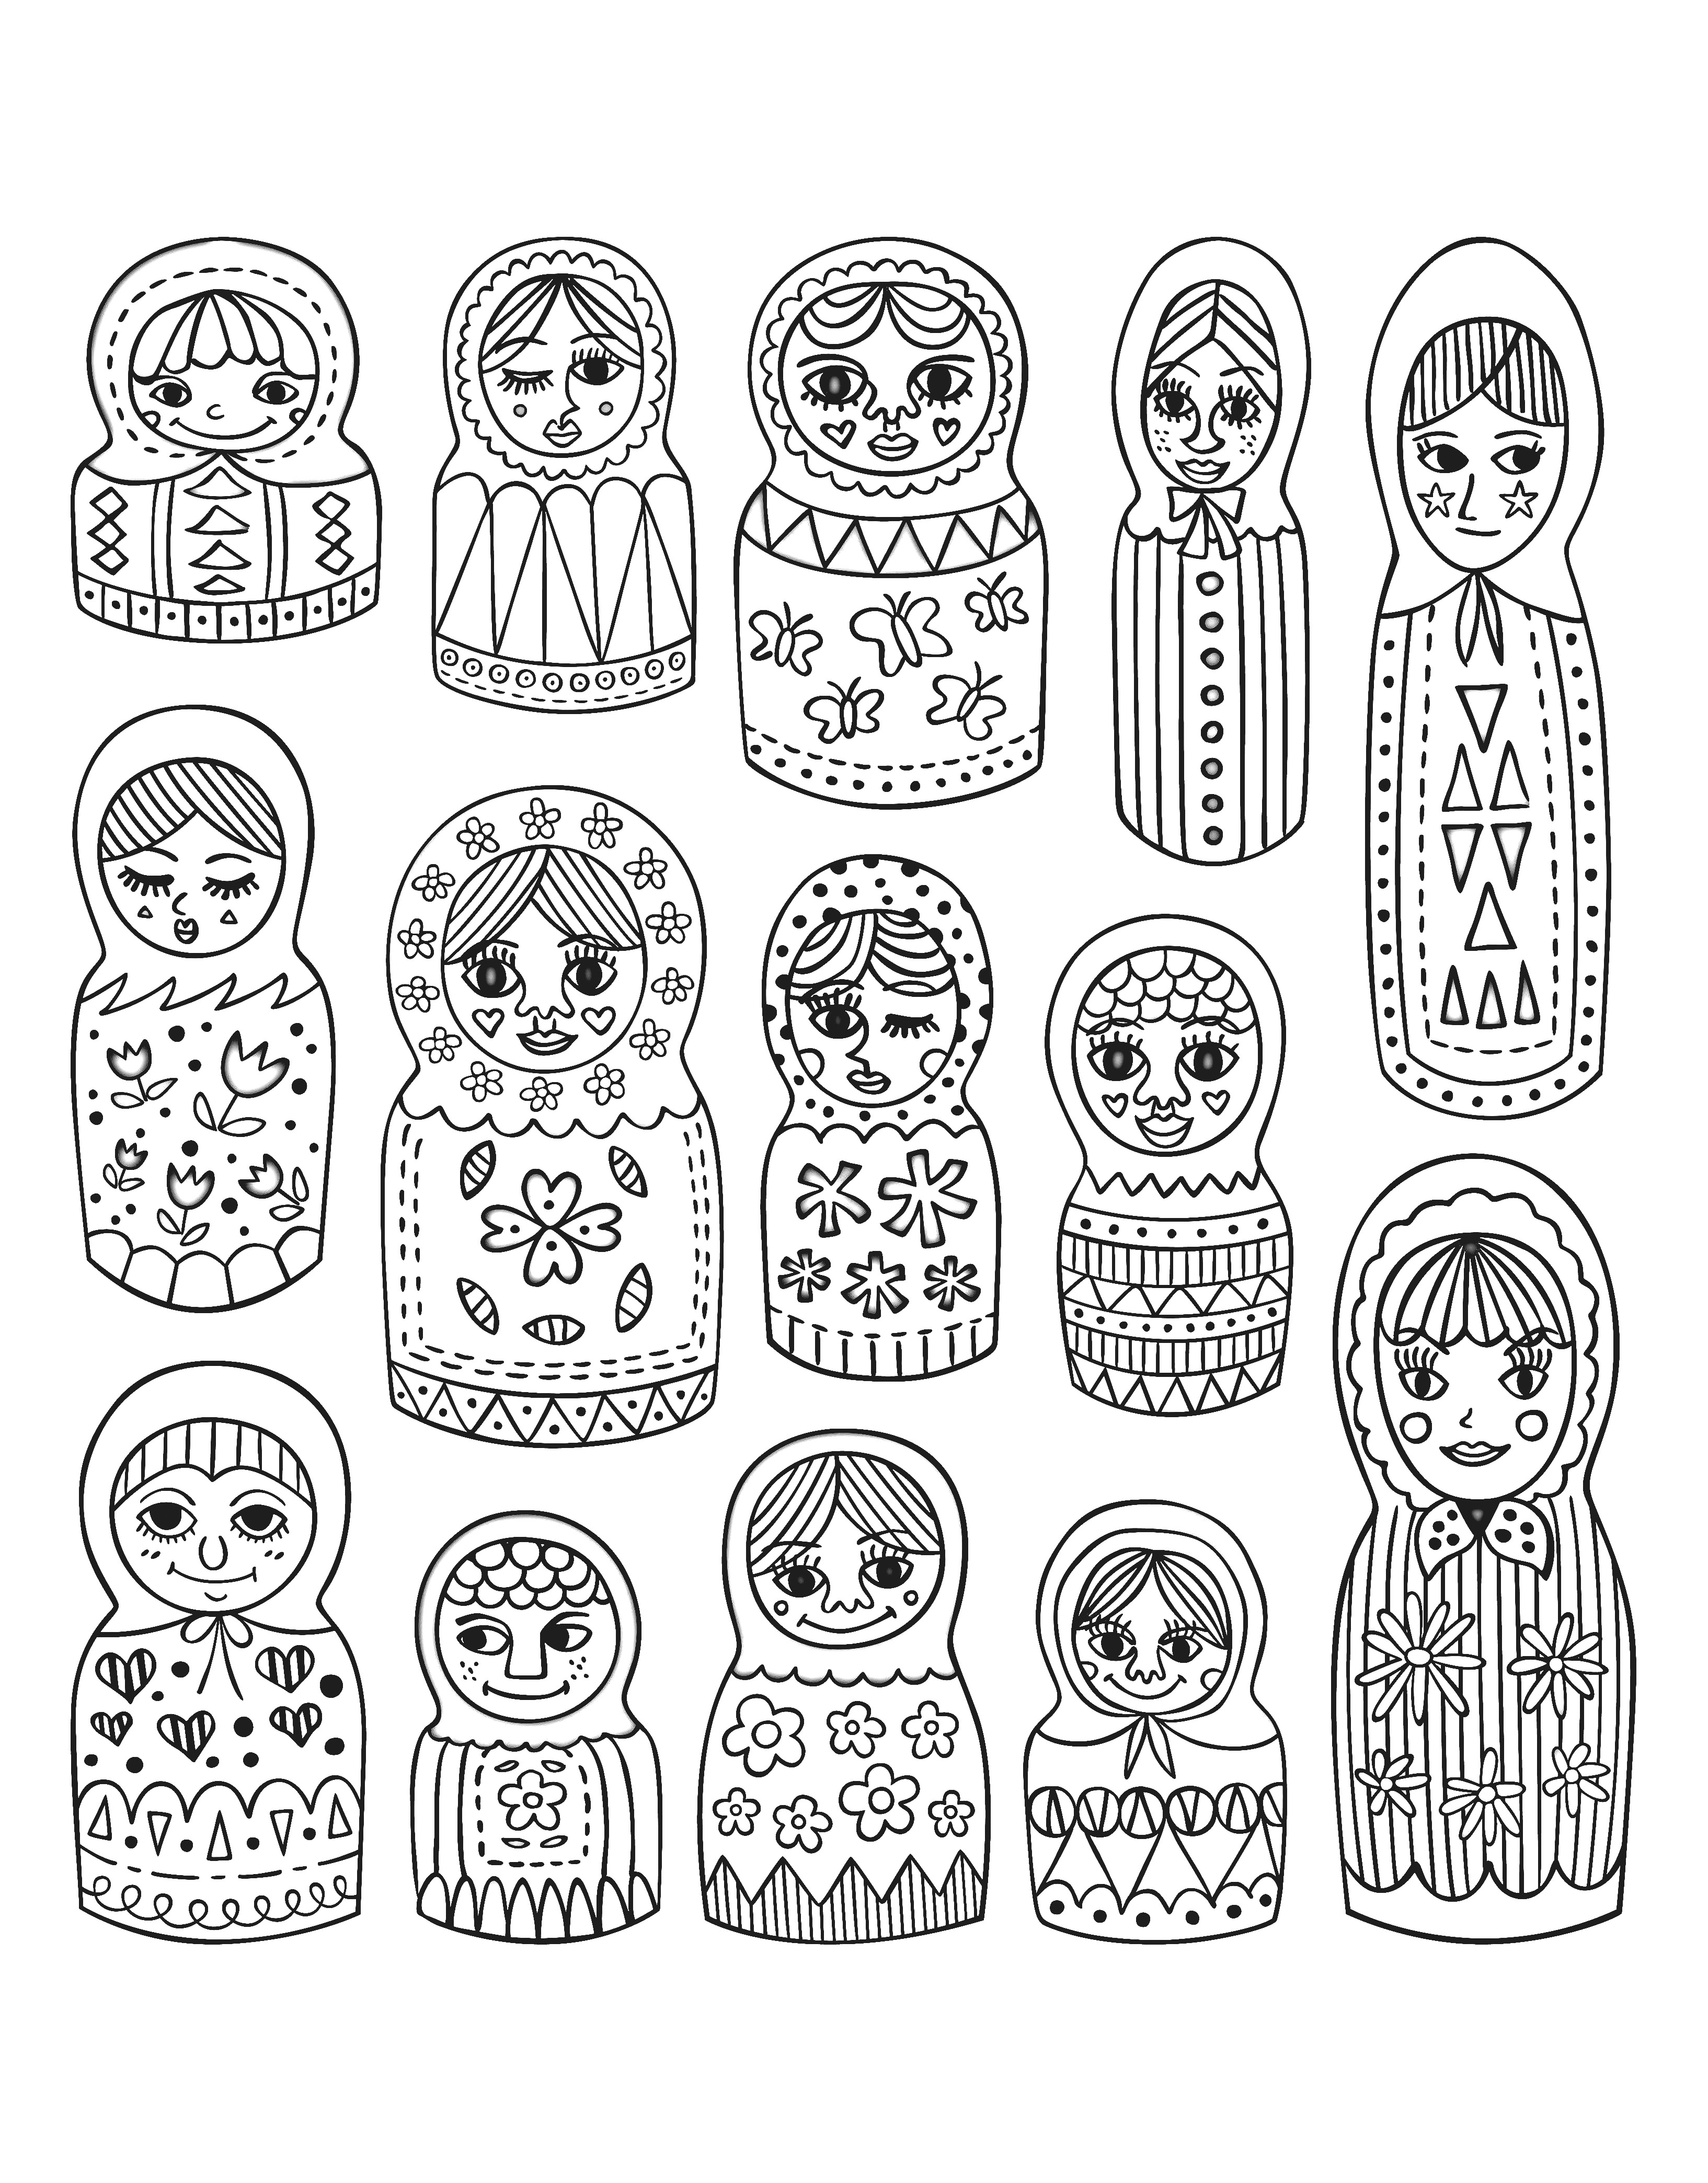 Desenhos grátis para colorir de Bonecas russas para imprimir e colorir